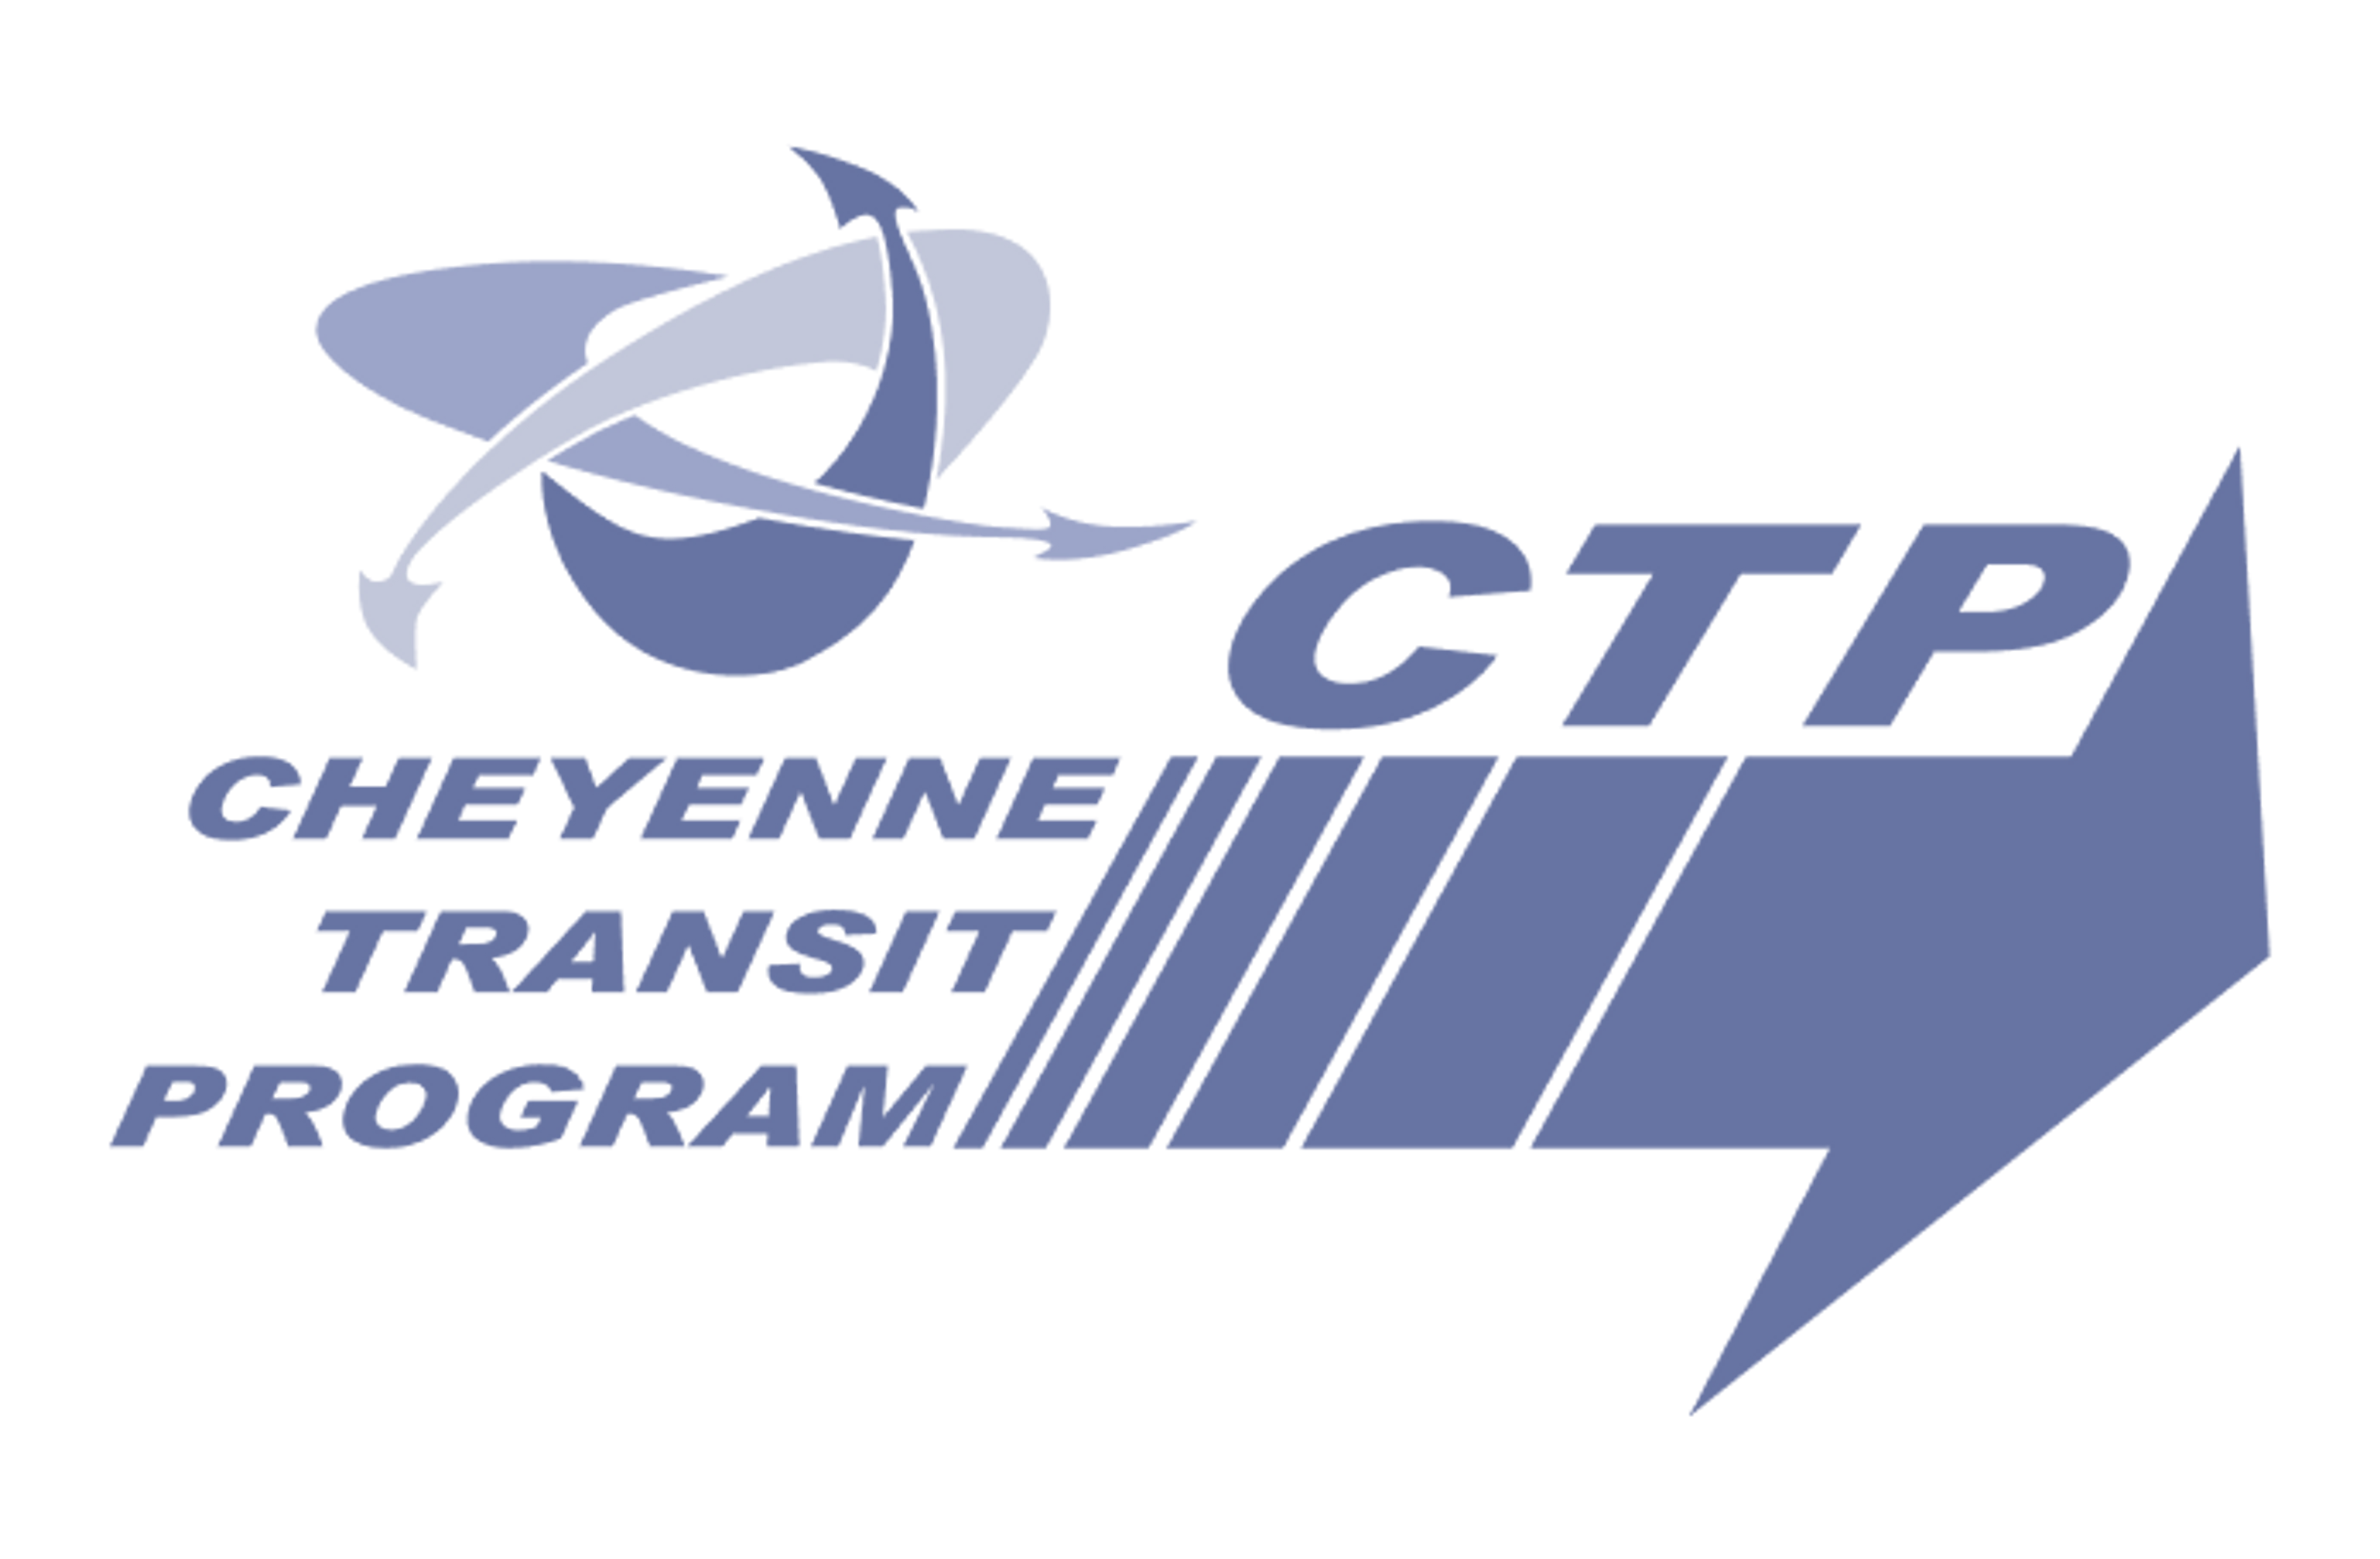 Cheyenne Transit Program logo